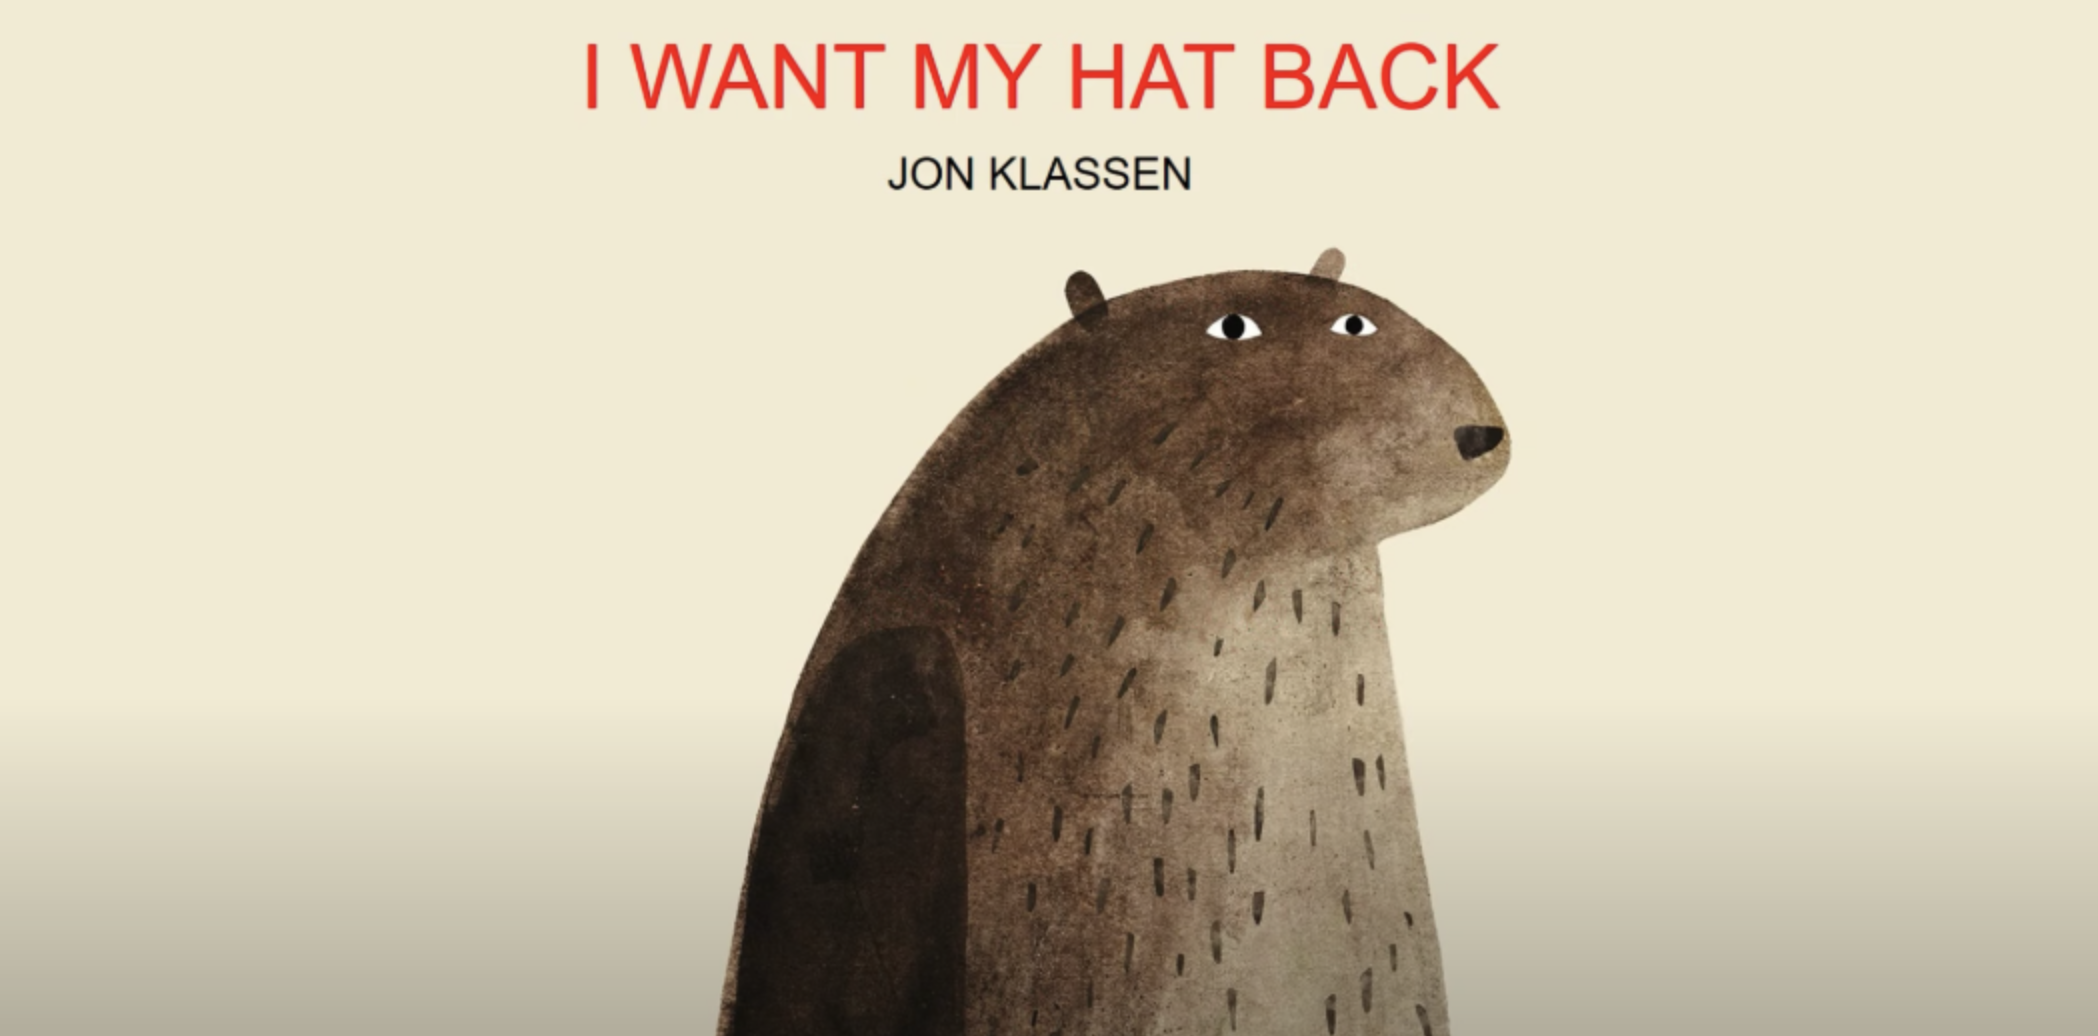 Книга i want my hat back. I want my hat back иллюстрации. Book "i want my hat back". Want my hat back читать. Wont back